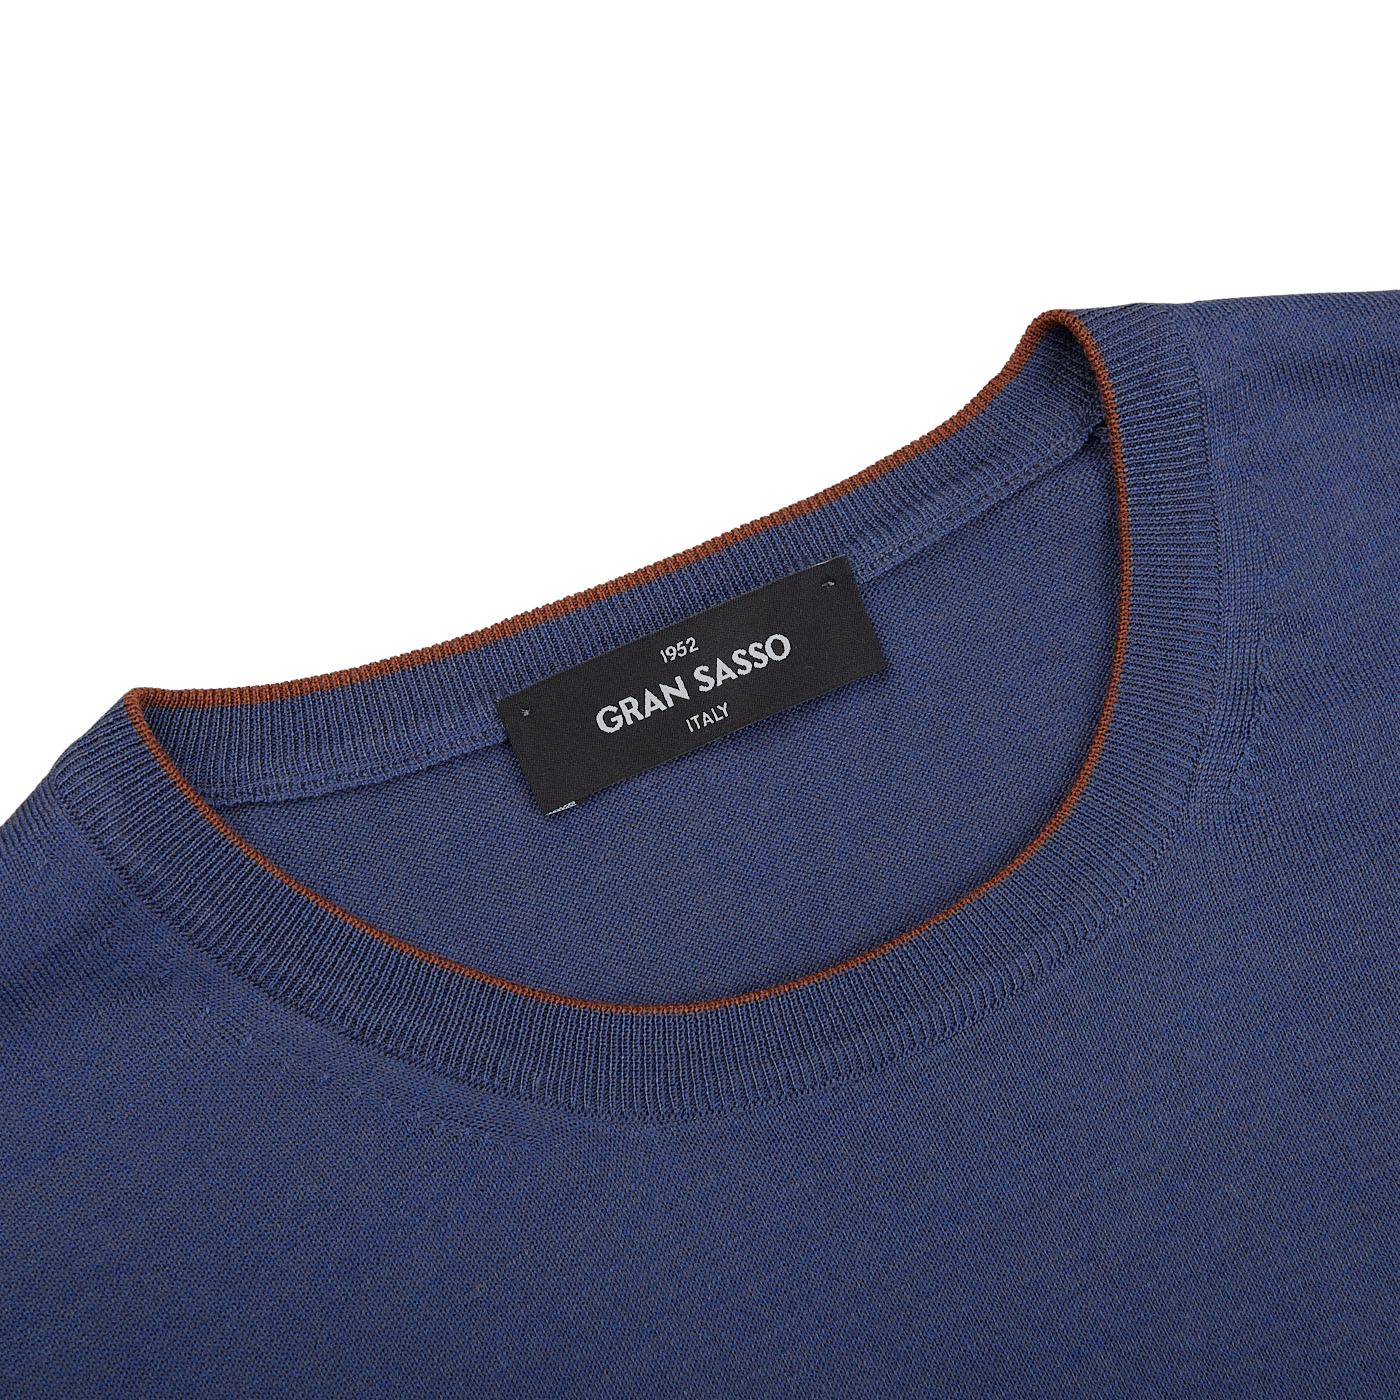 A Gran Sasso dark blue lightweight Dark Blue Silk Cotton Crewneck Sweater.